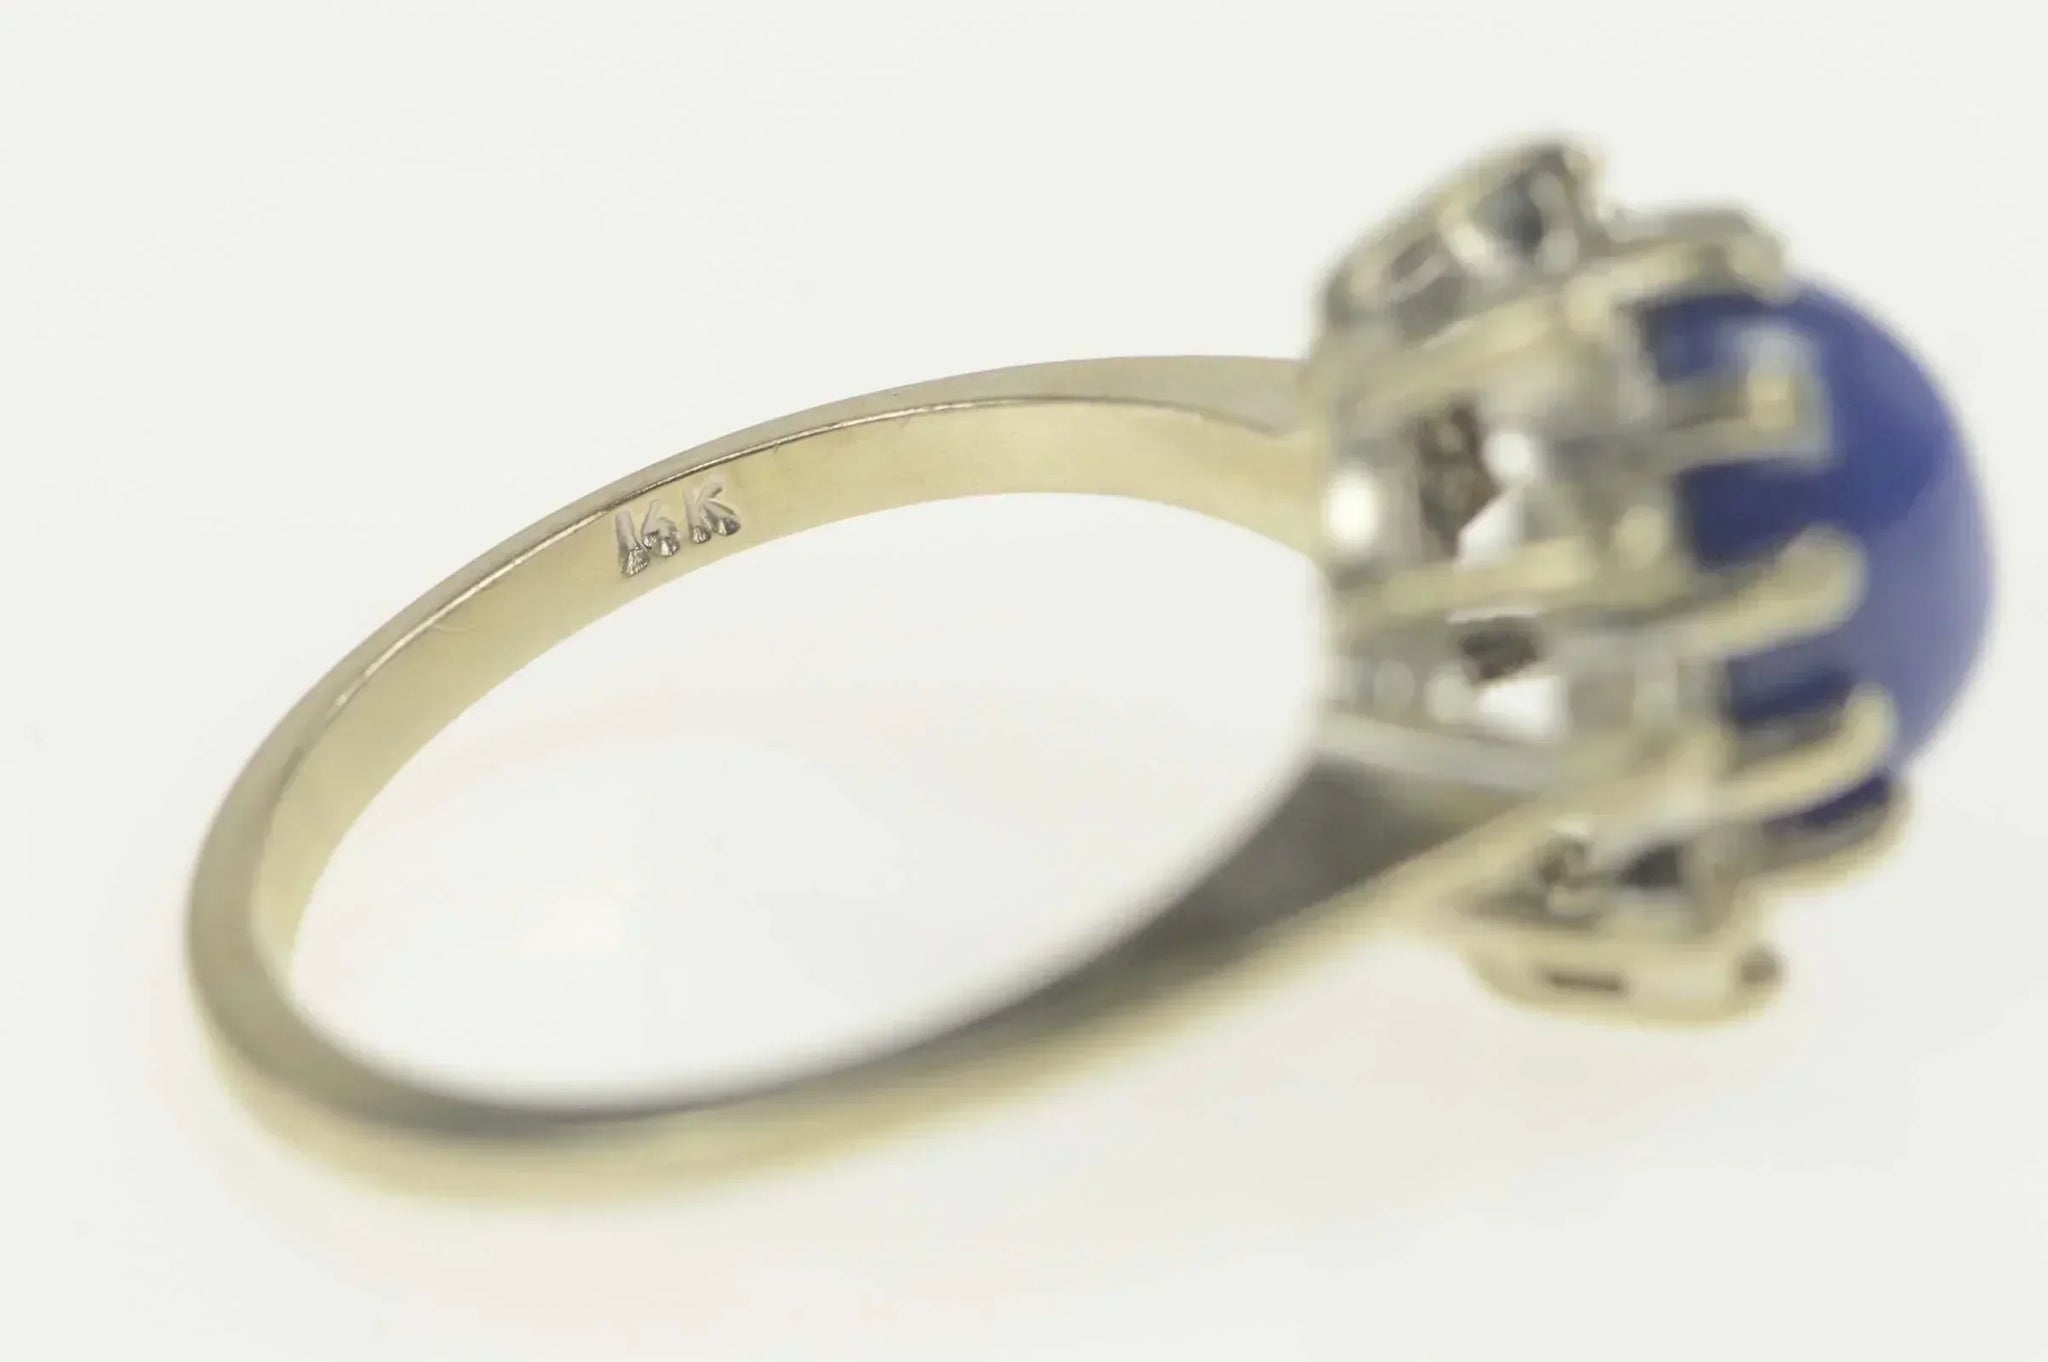 1950's Diamond Ring Star Shaped 14K White Gold